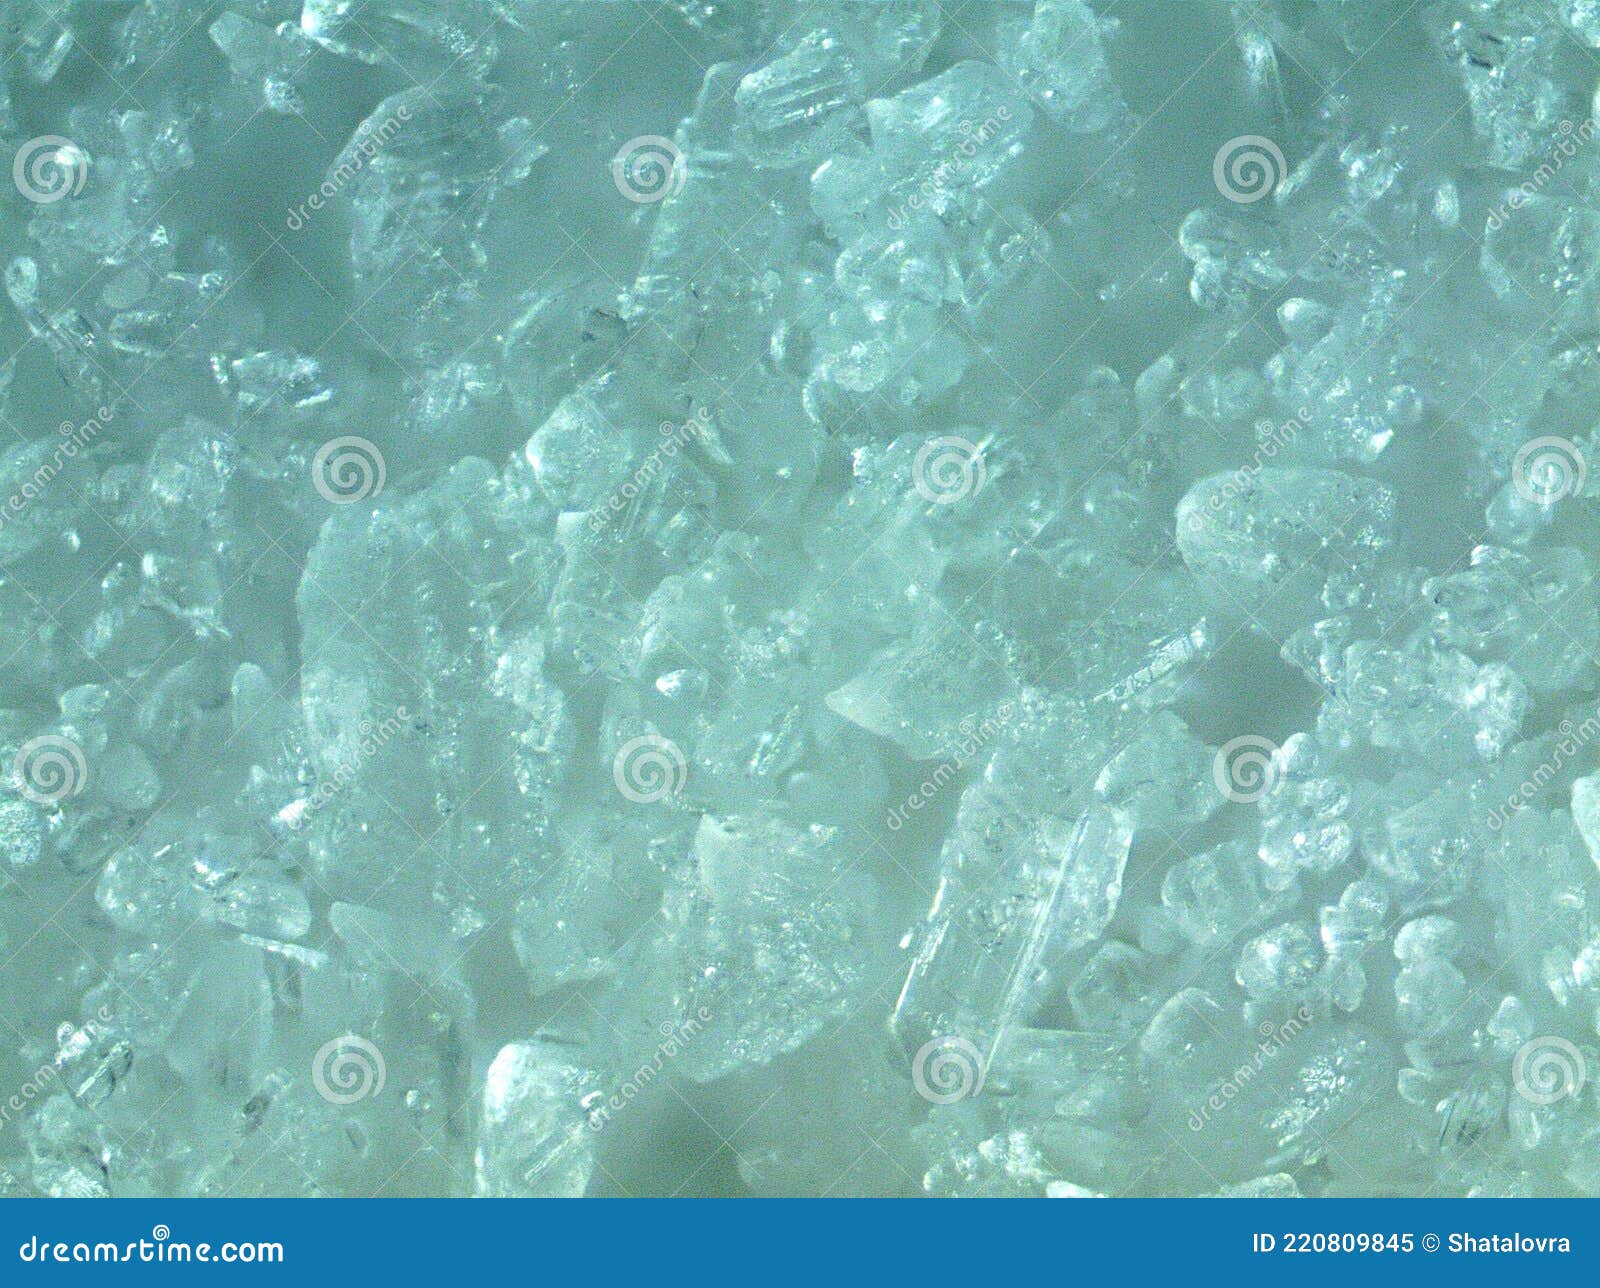 Cristalli Di Soda Da Da Cottura Con Ingrandimento Di 160 X . Immagine Stock  - Immagine di cristalli, tessile: 220809845